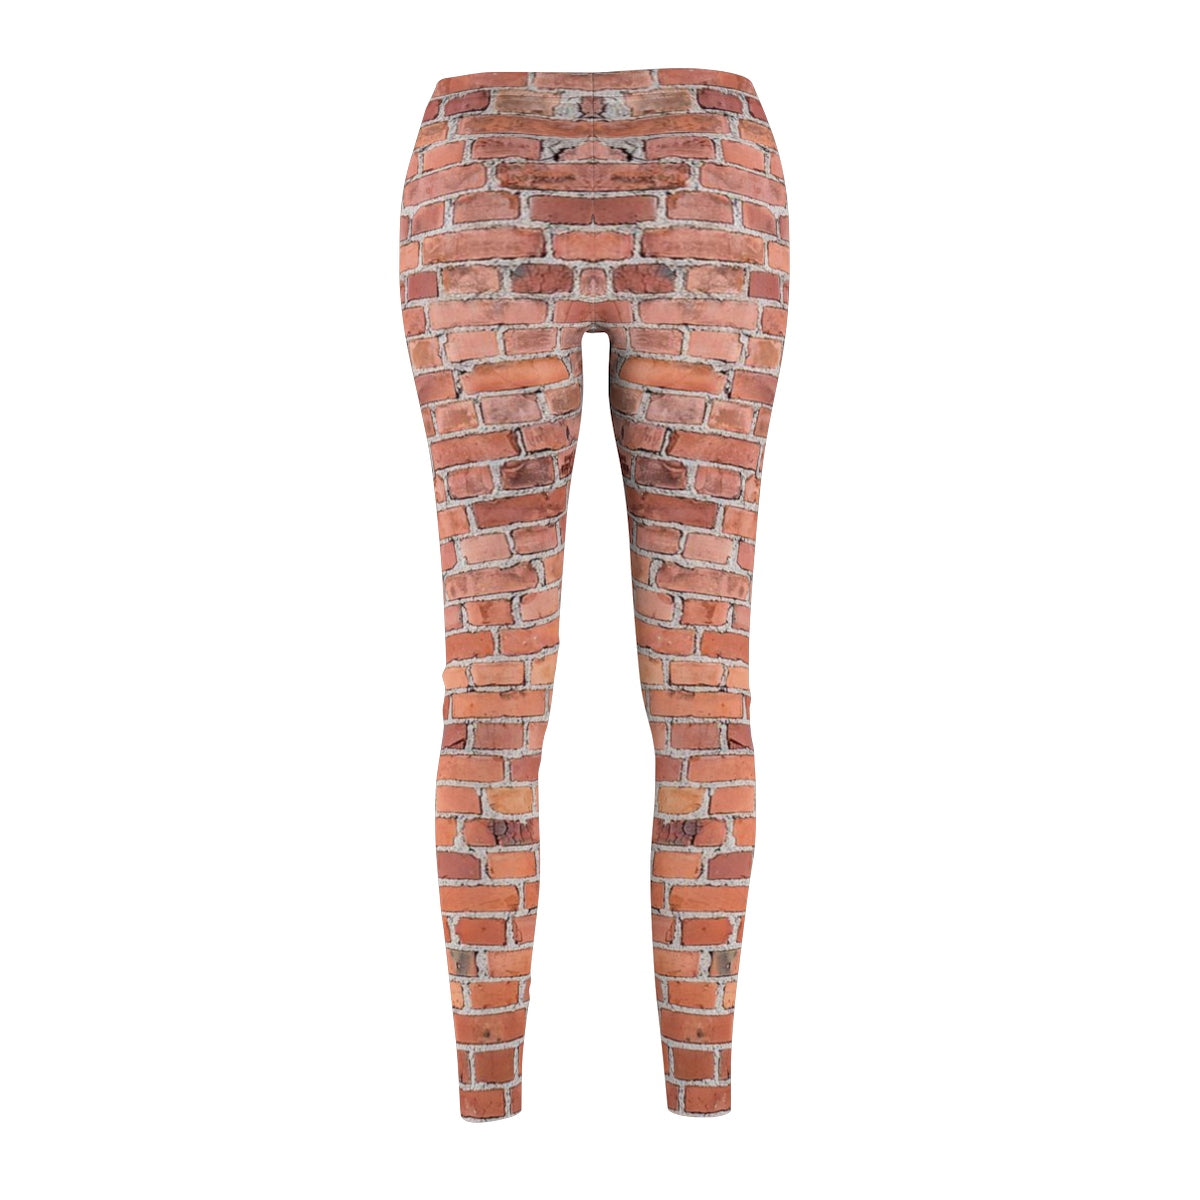 Casual Leggings - Brick Print - Aardvark Tees - Tees that Please